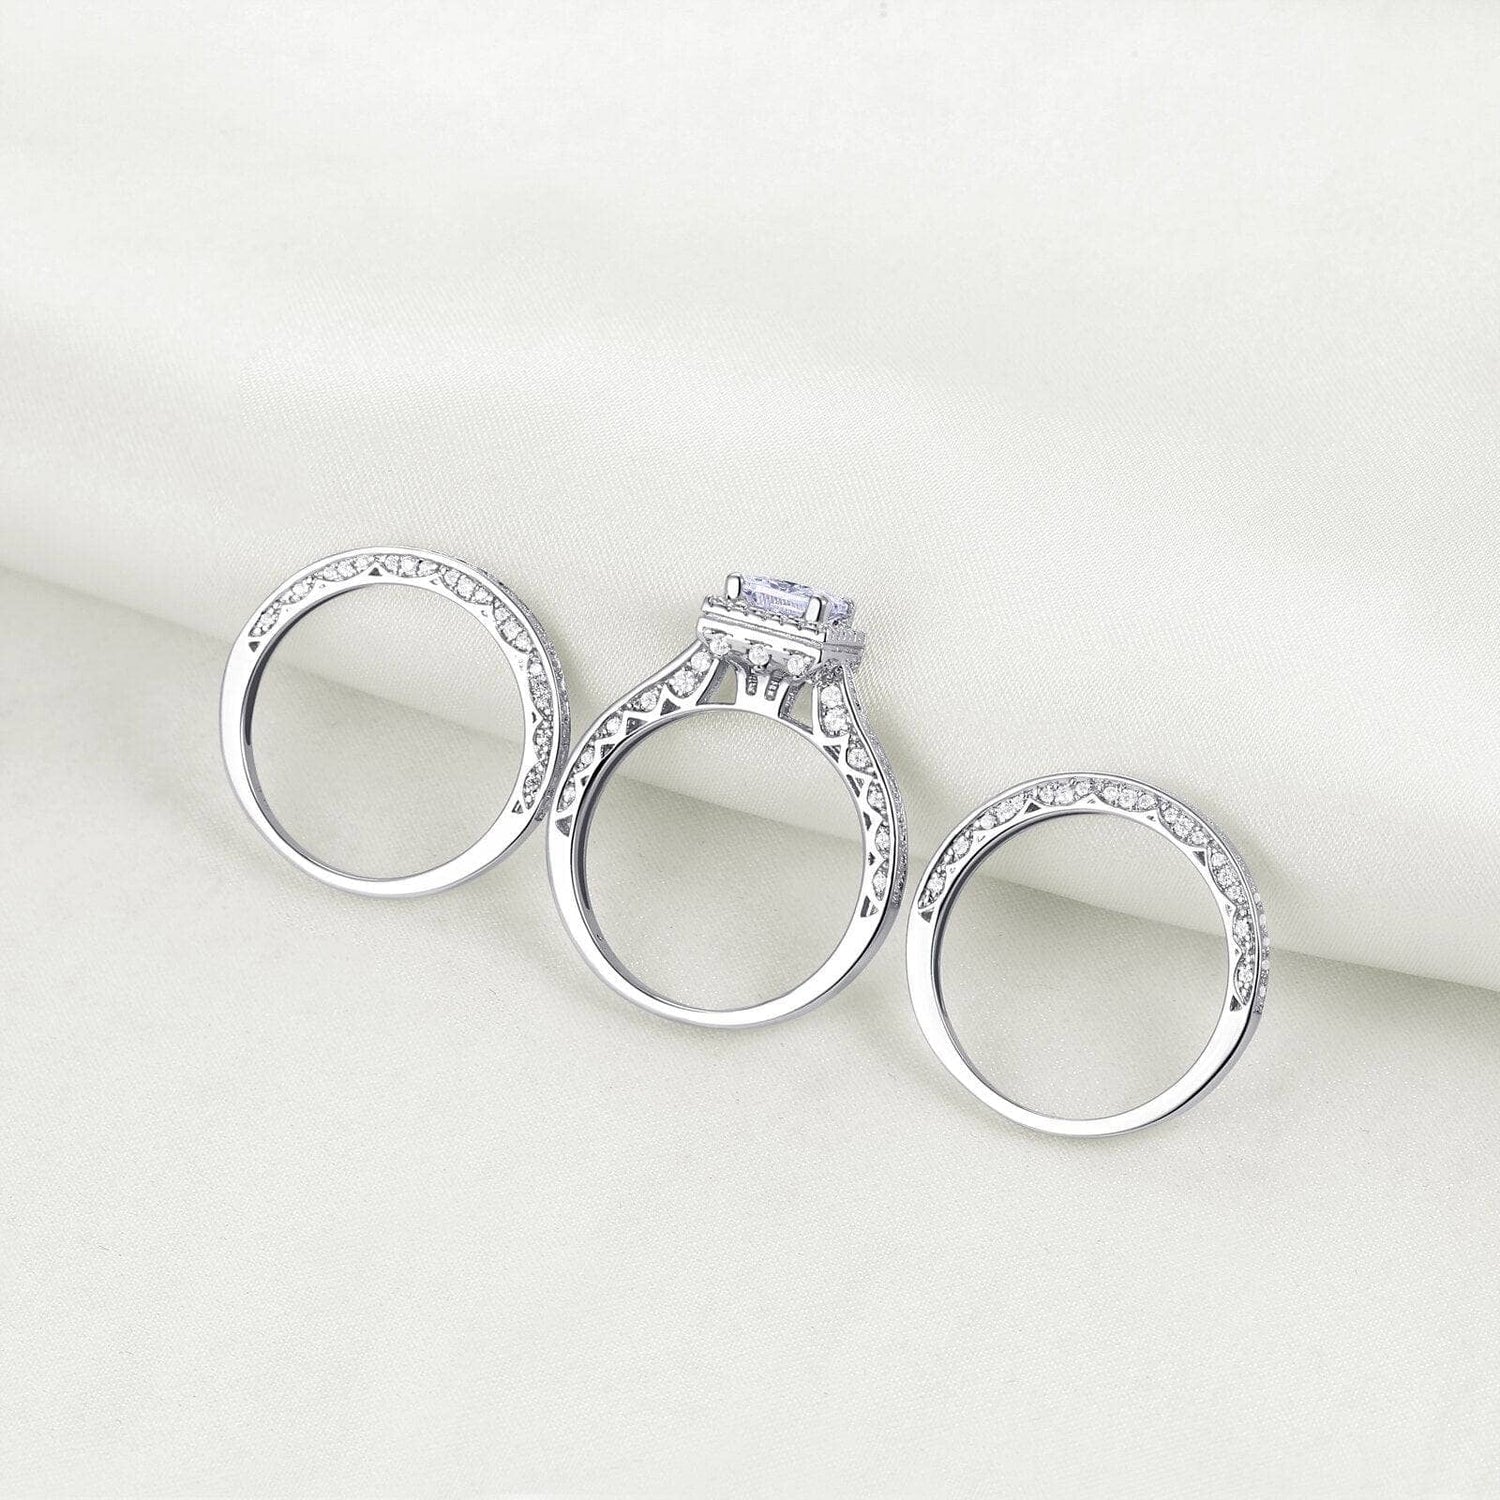 3pcs 2.8ct Princess Cut White Cubic Zircon Engagement Ring